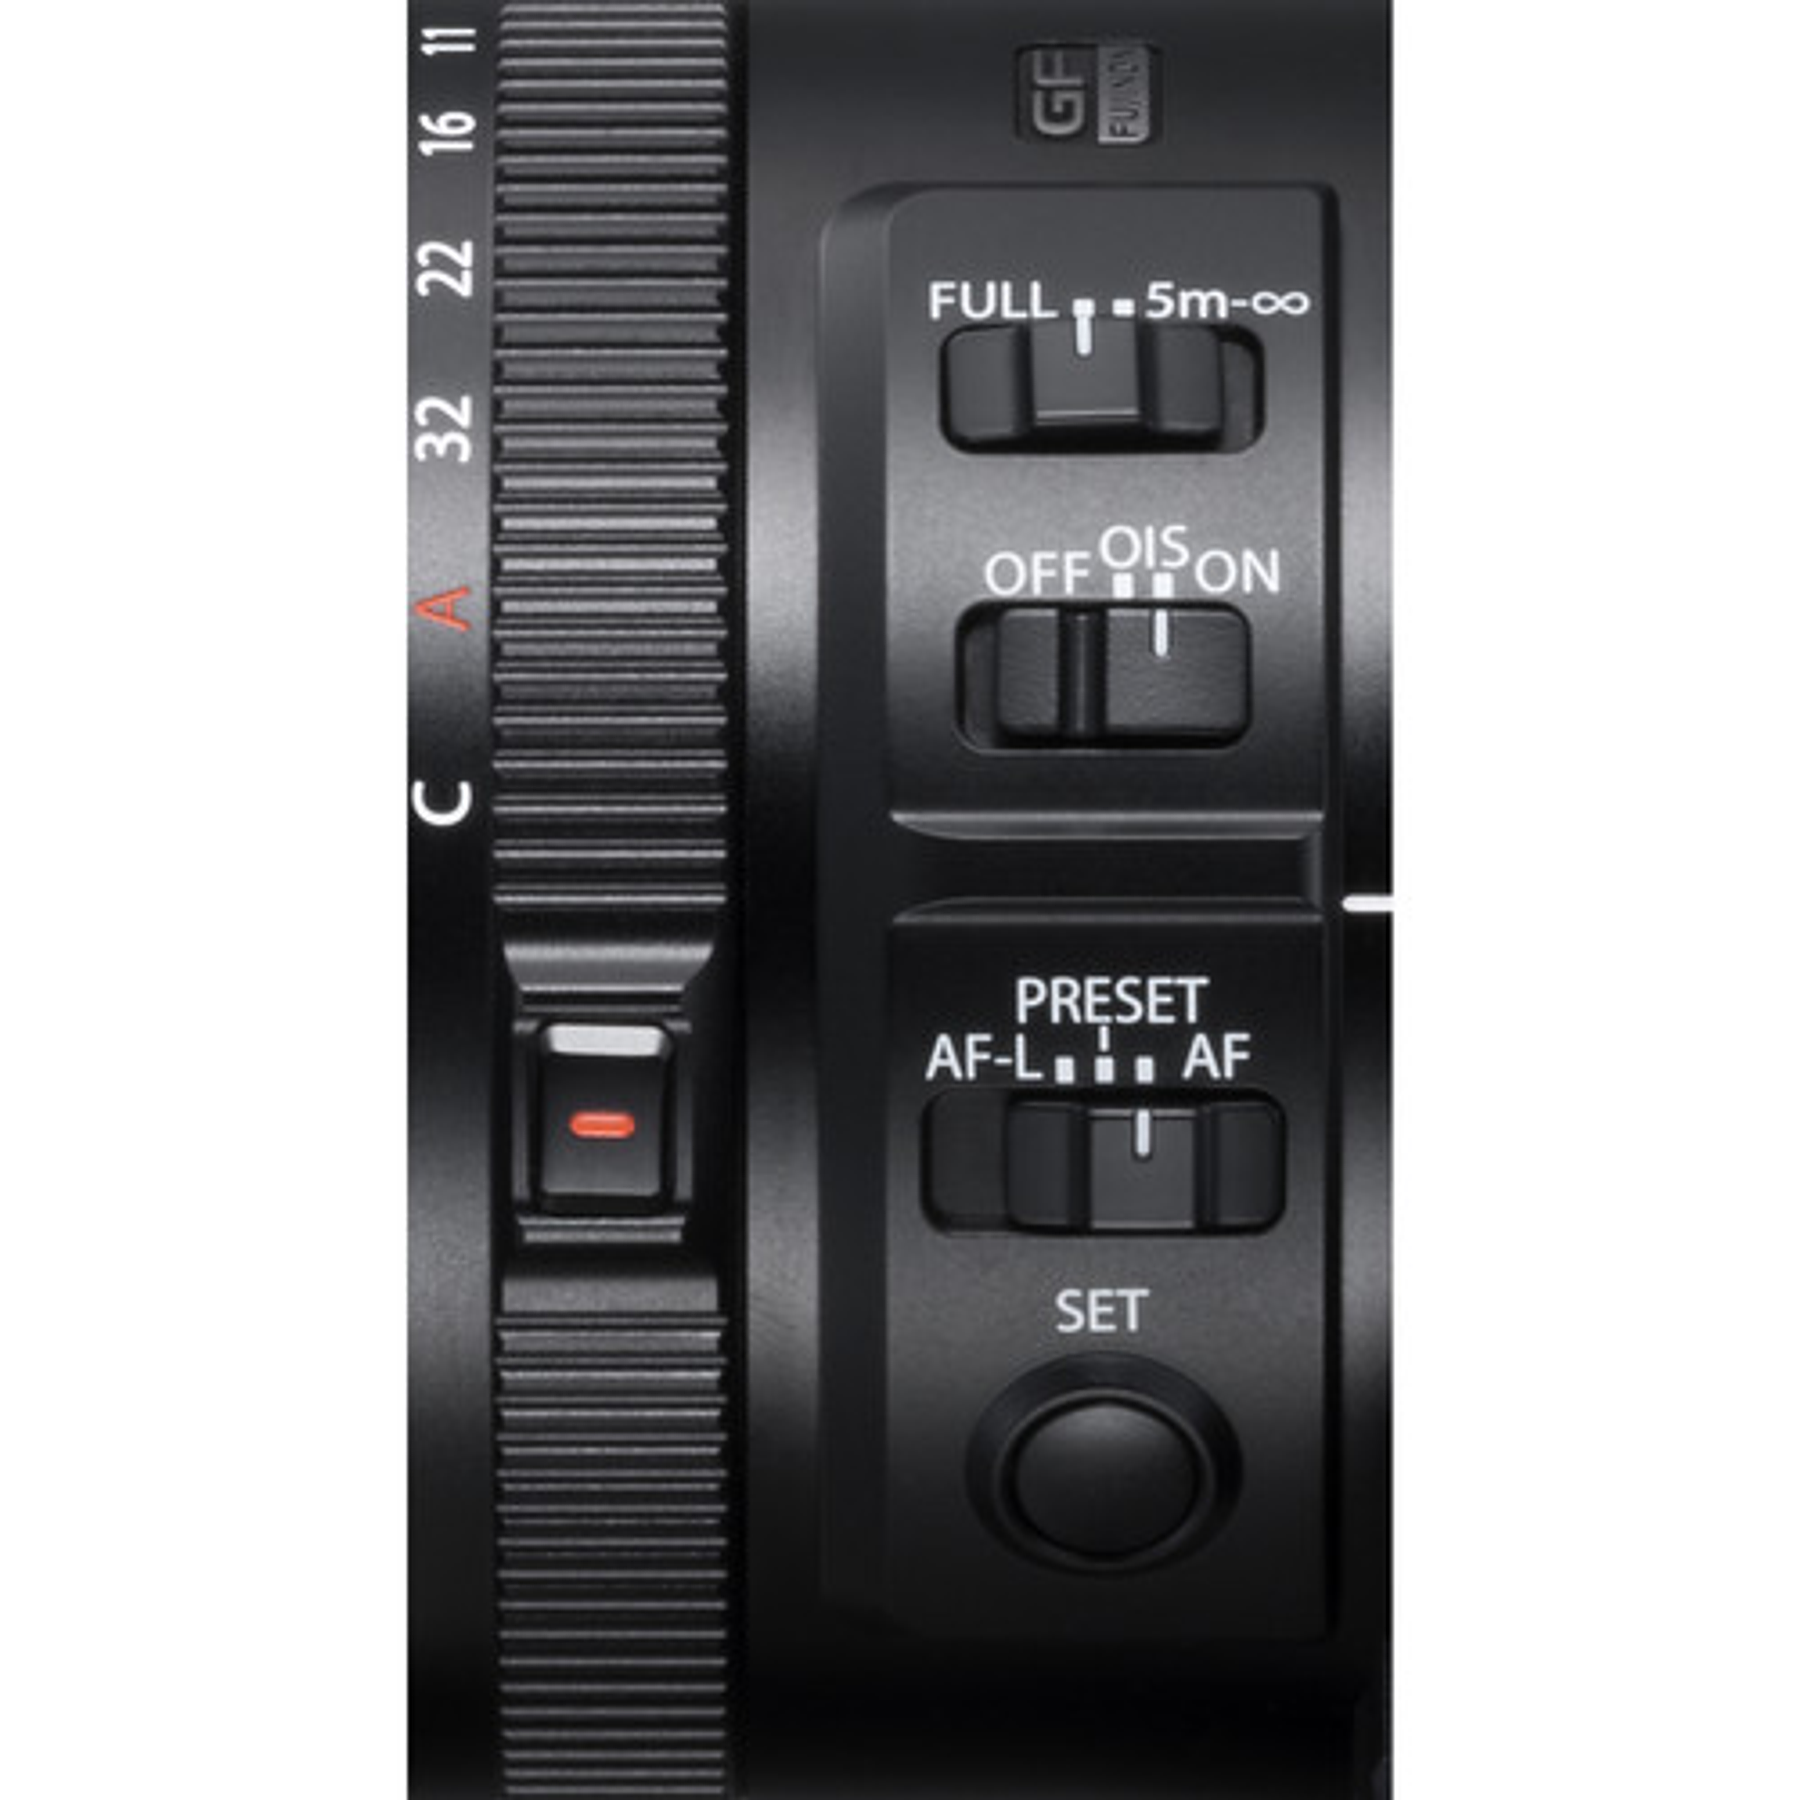 Fujifilm GF 250mm F4 R LM OIS WR